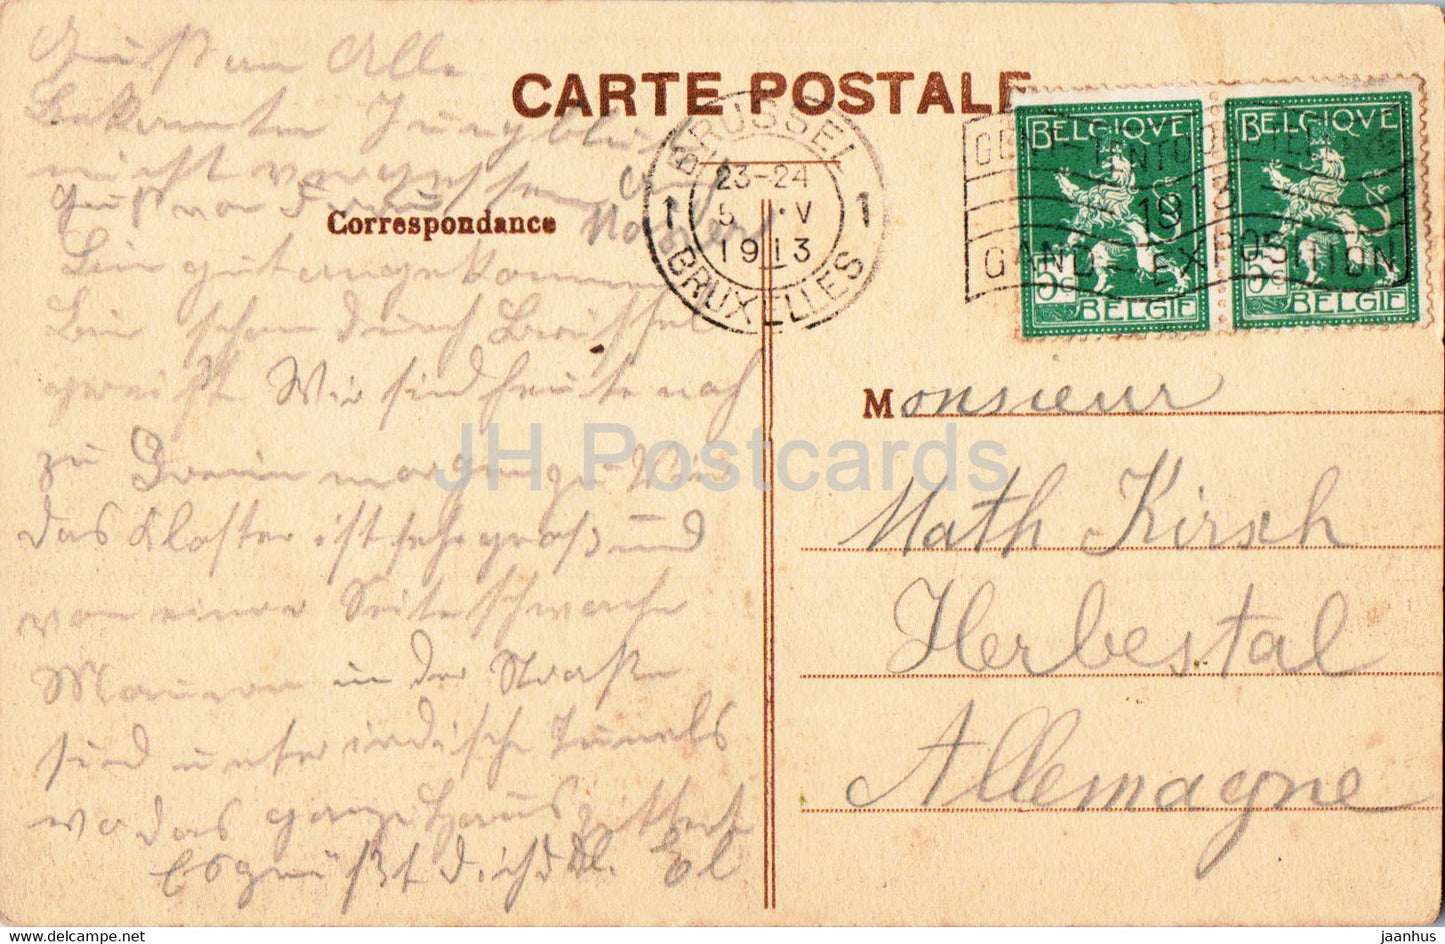 Bruxelles - Bruxelles - L'Eglise ND du Sablon - tram - église - 16 - carte postale ancienne - 1913 - Belgique - occasion